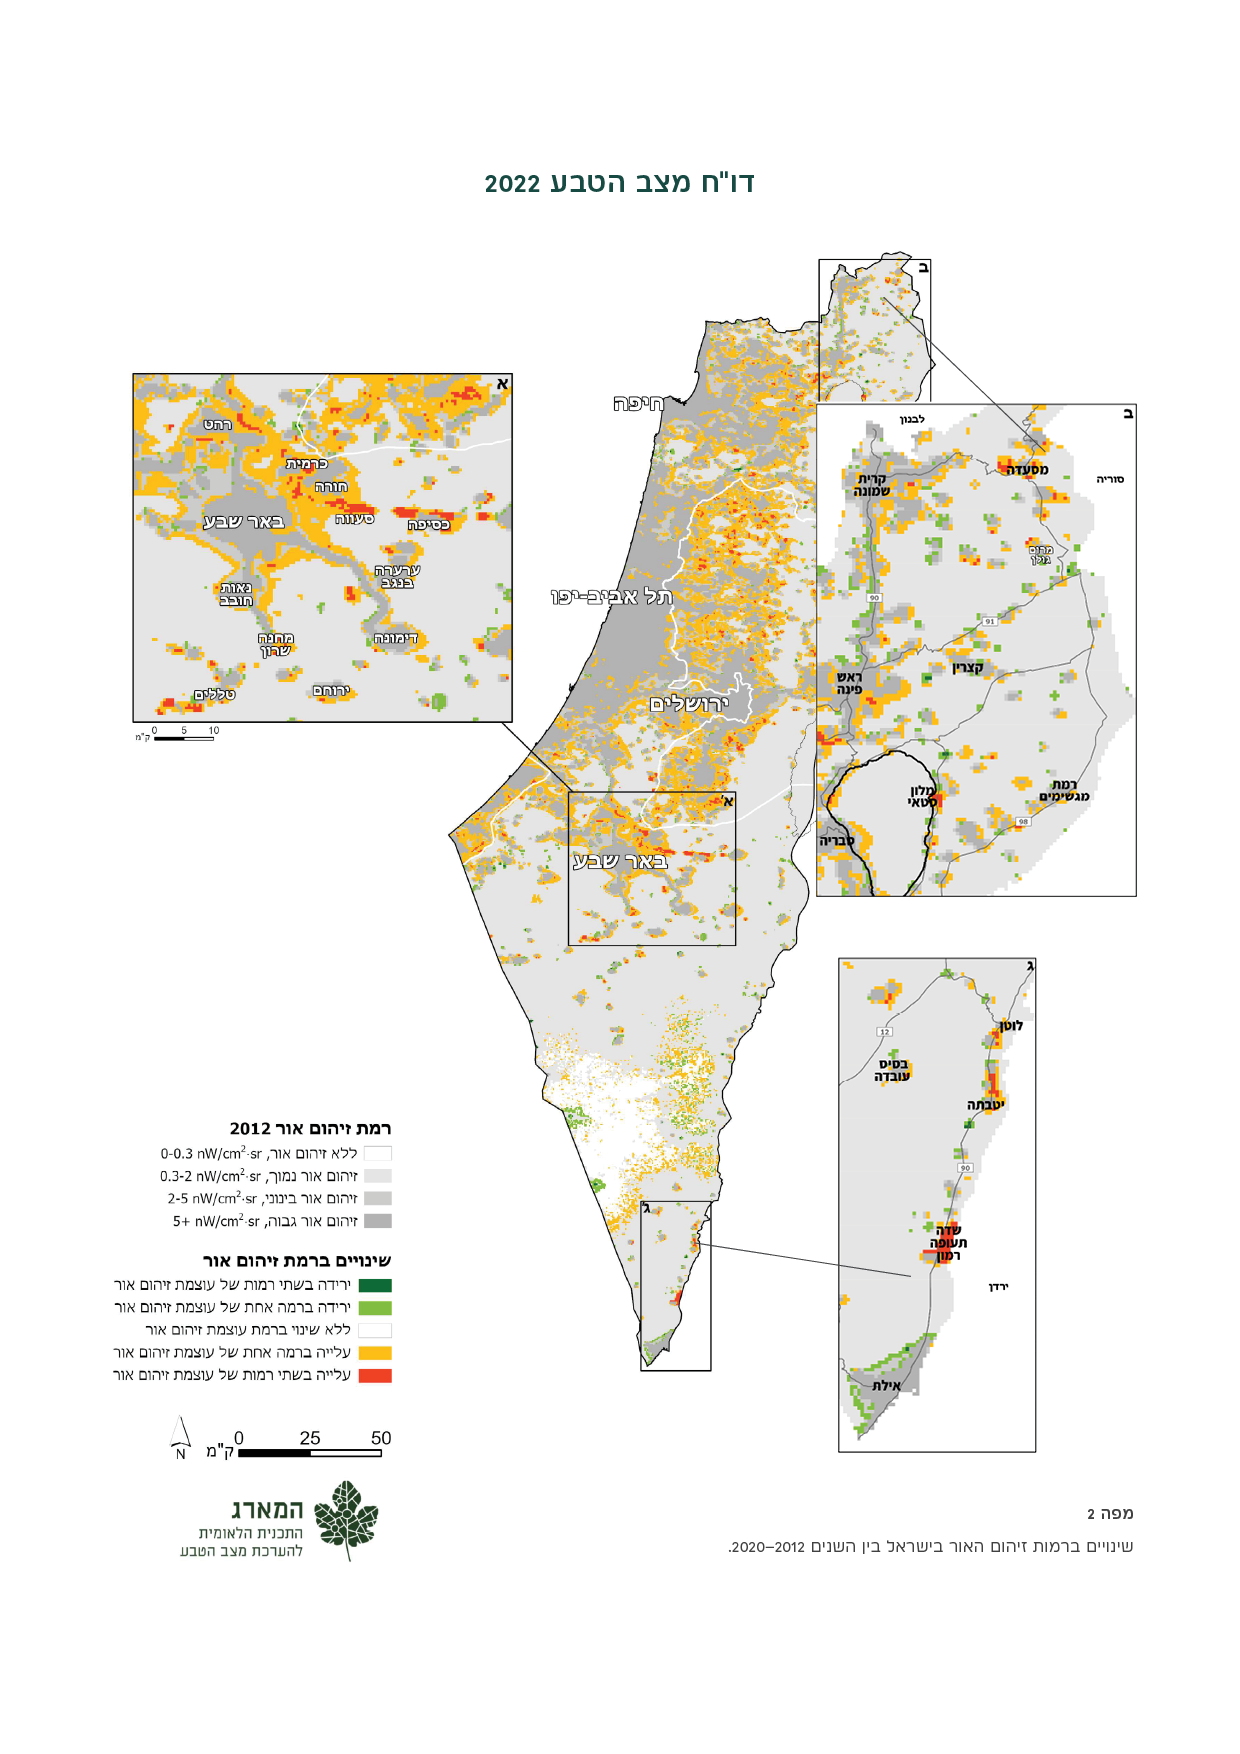 שינויים ברמות זיהום האור בישראל בין השנים 2012-2020